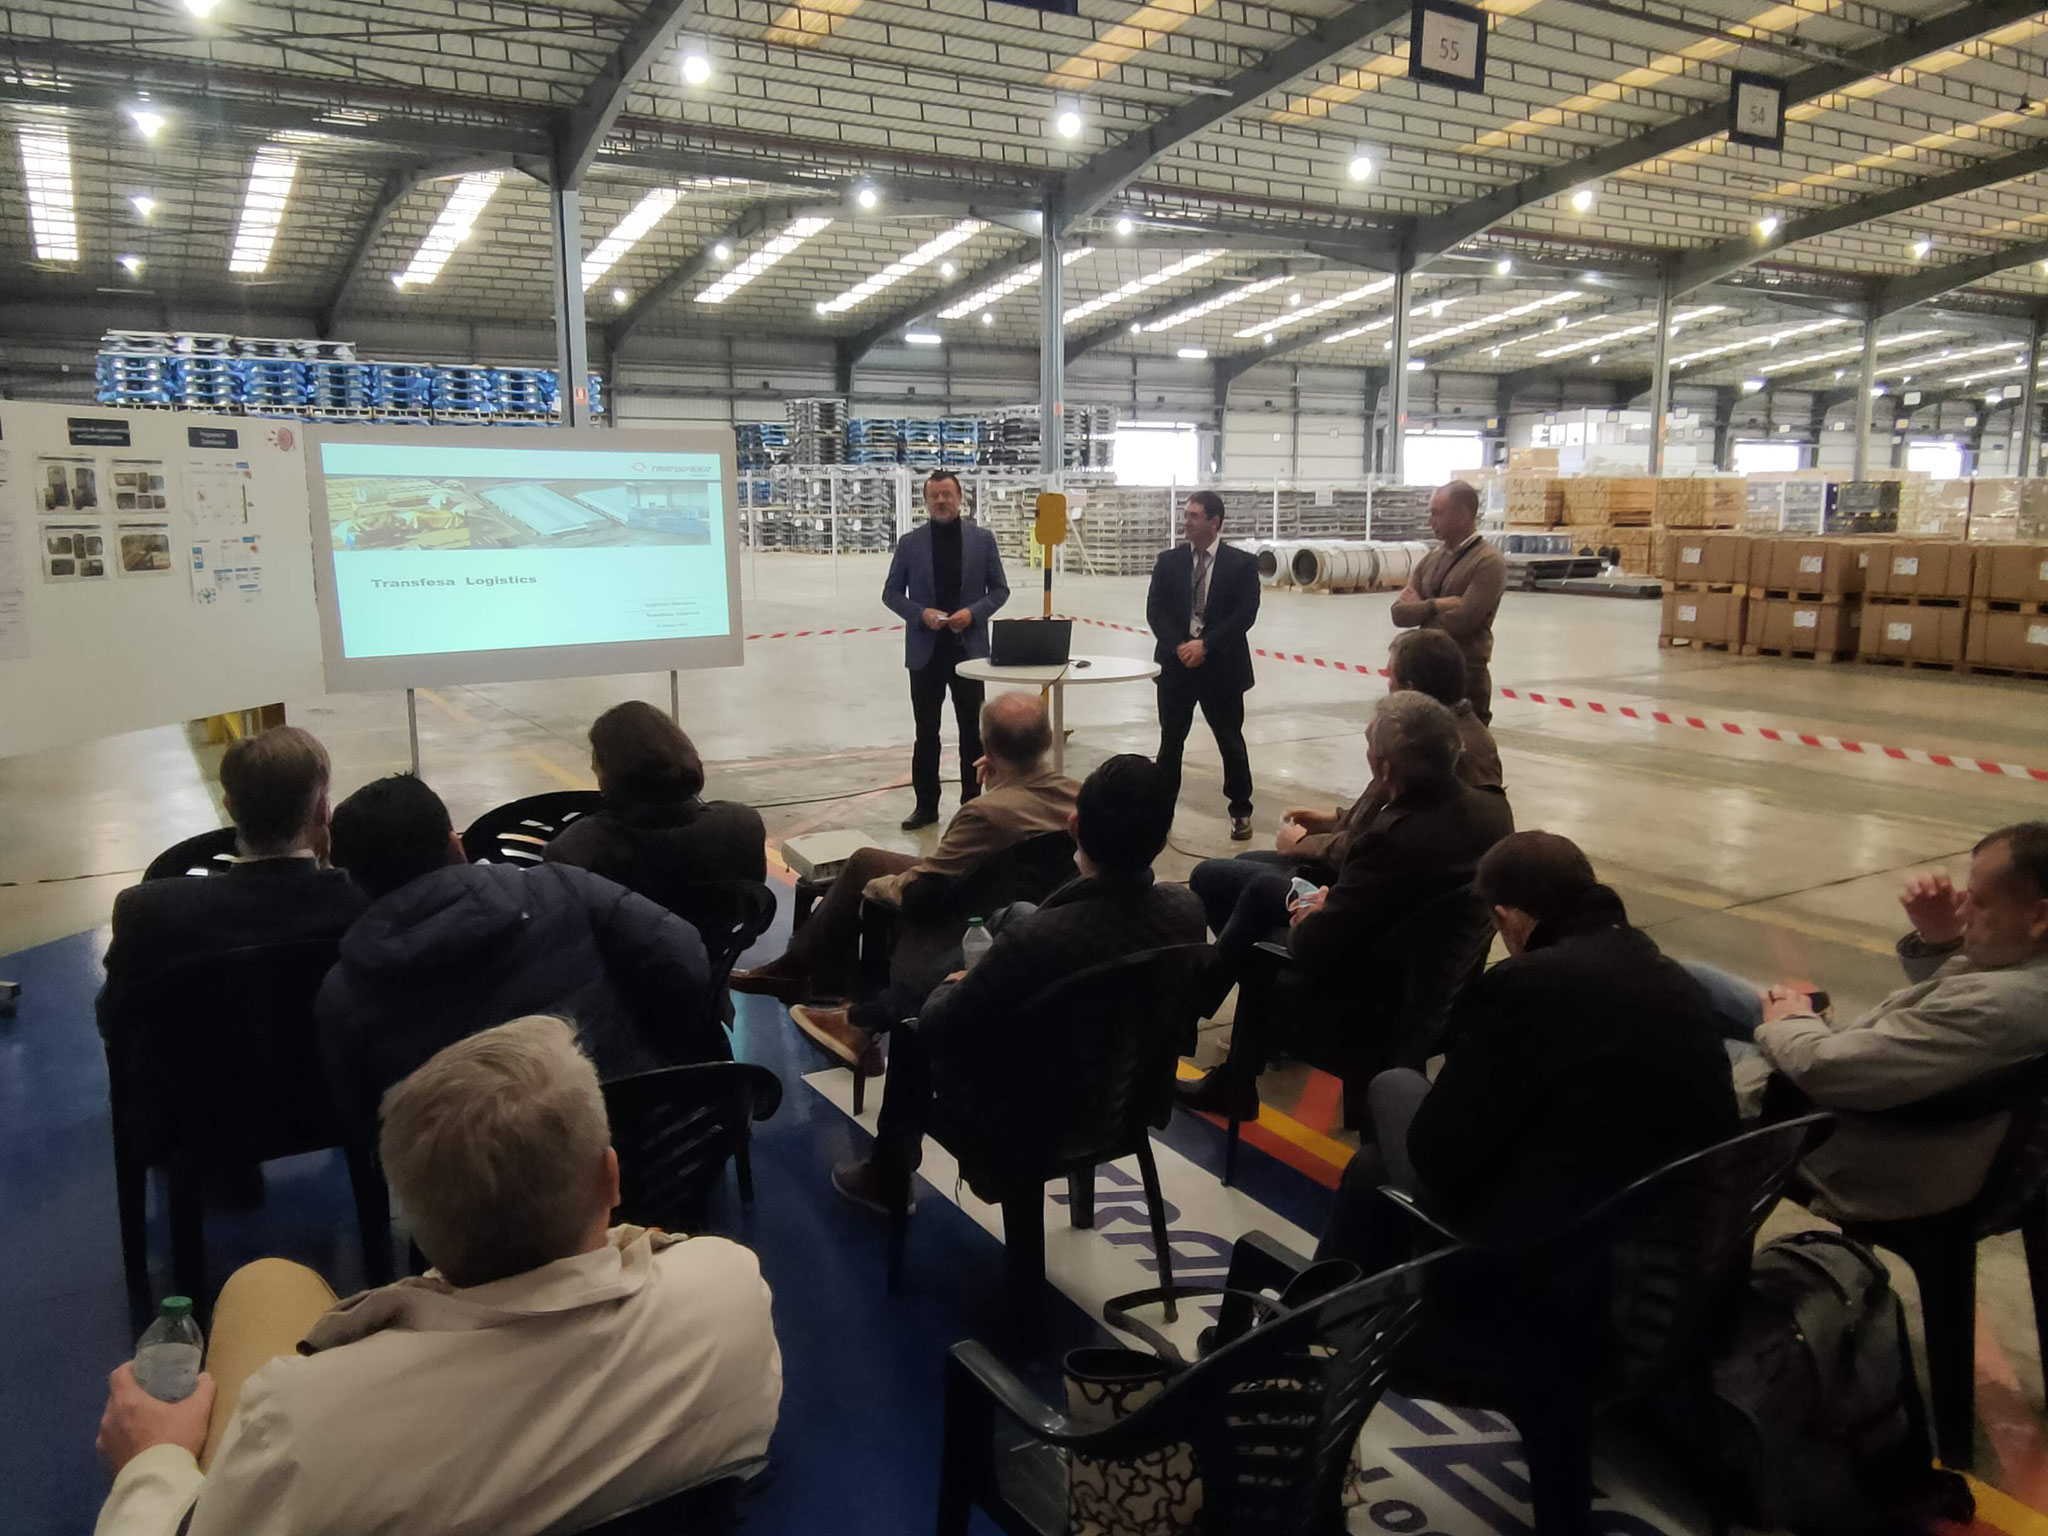 Präsentation durch das Führungsteam von Transfesa Logistics Valencia